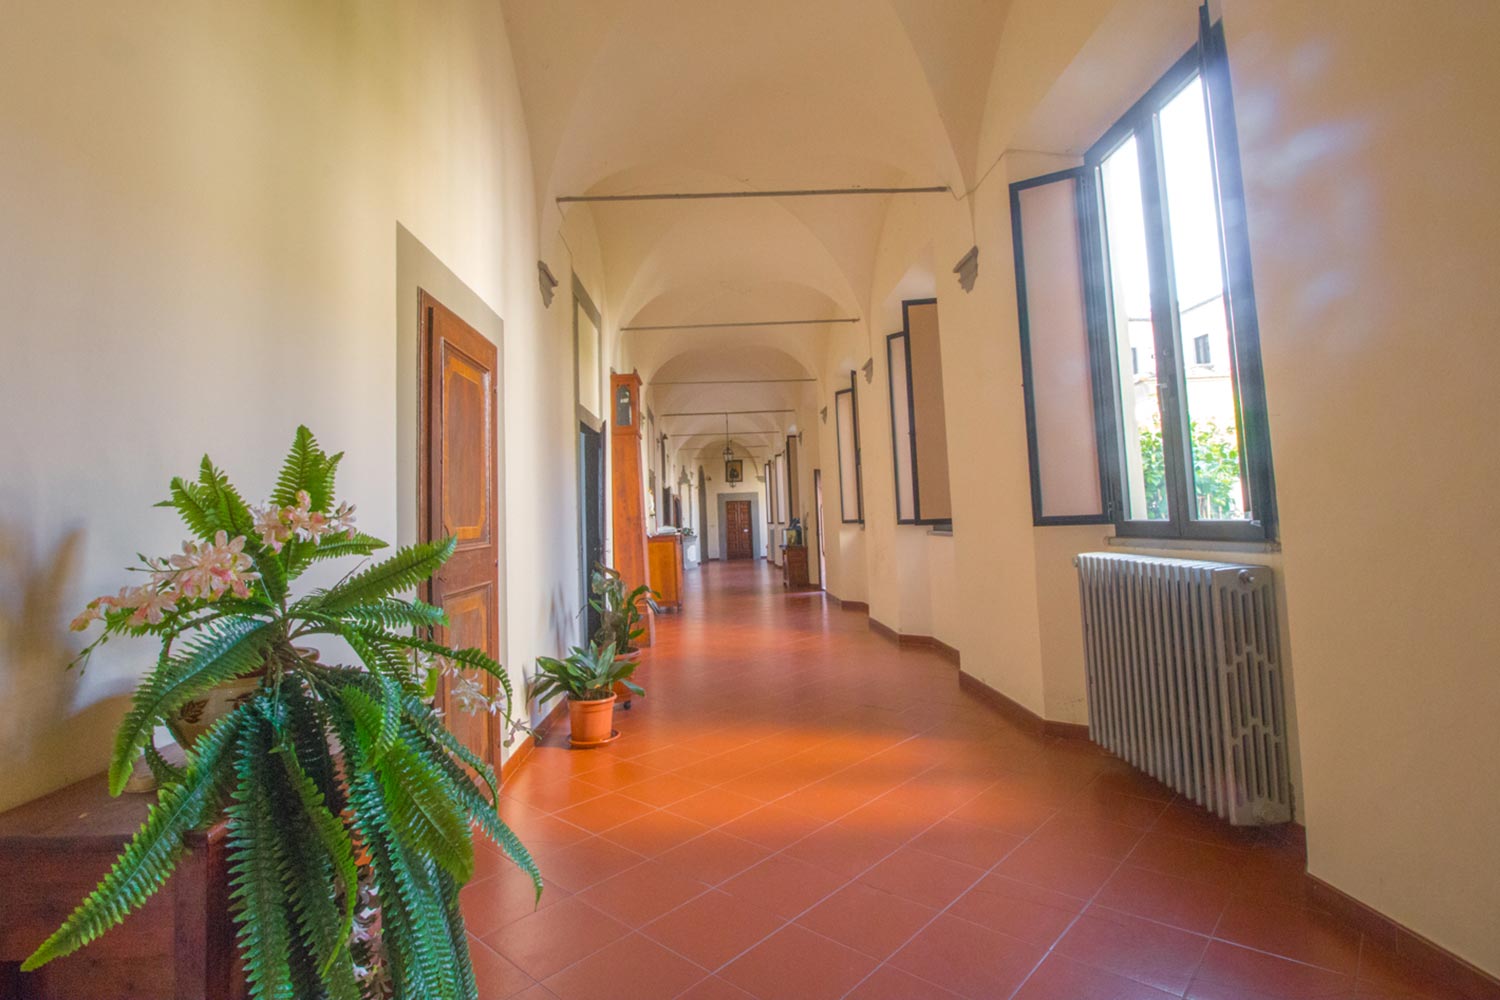 Convento Suore Montecatini Alto 53